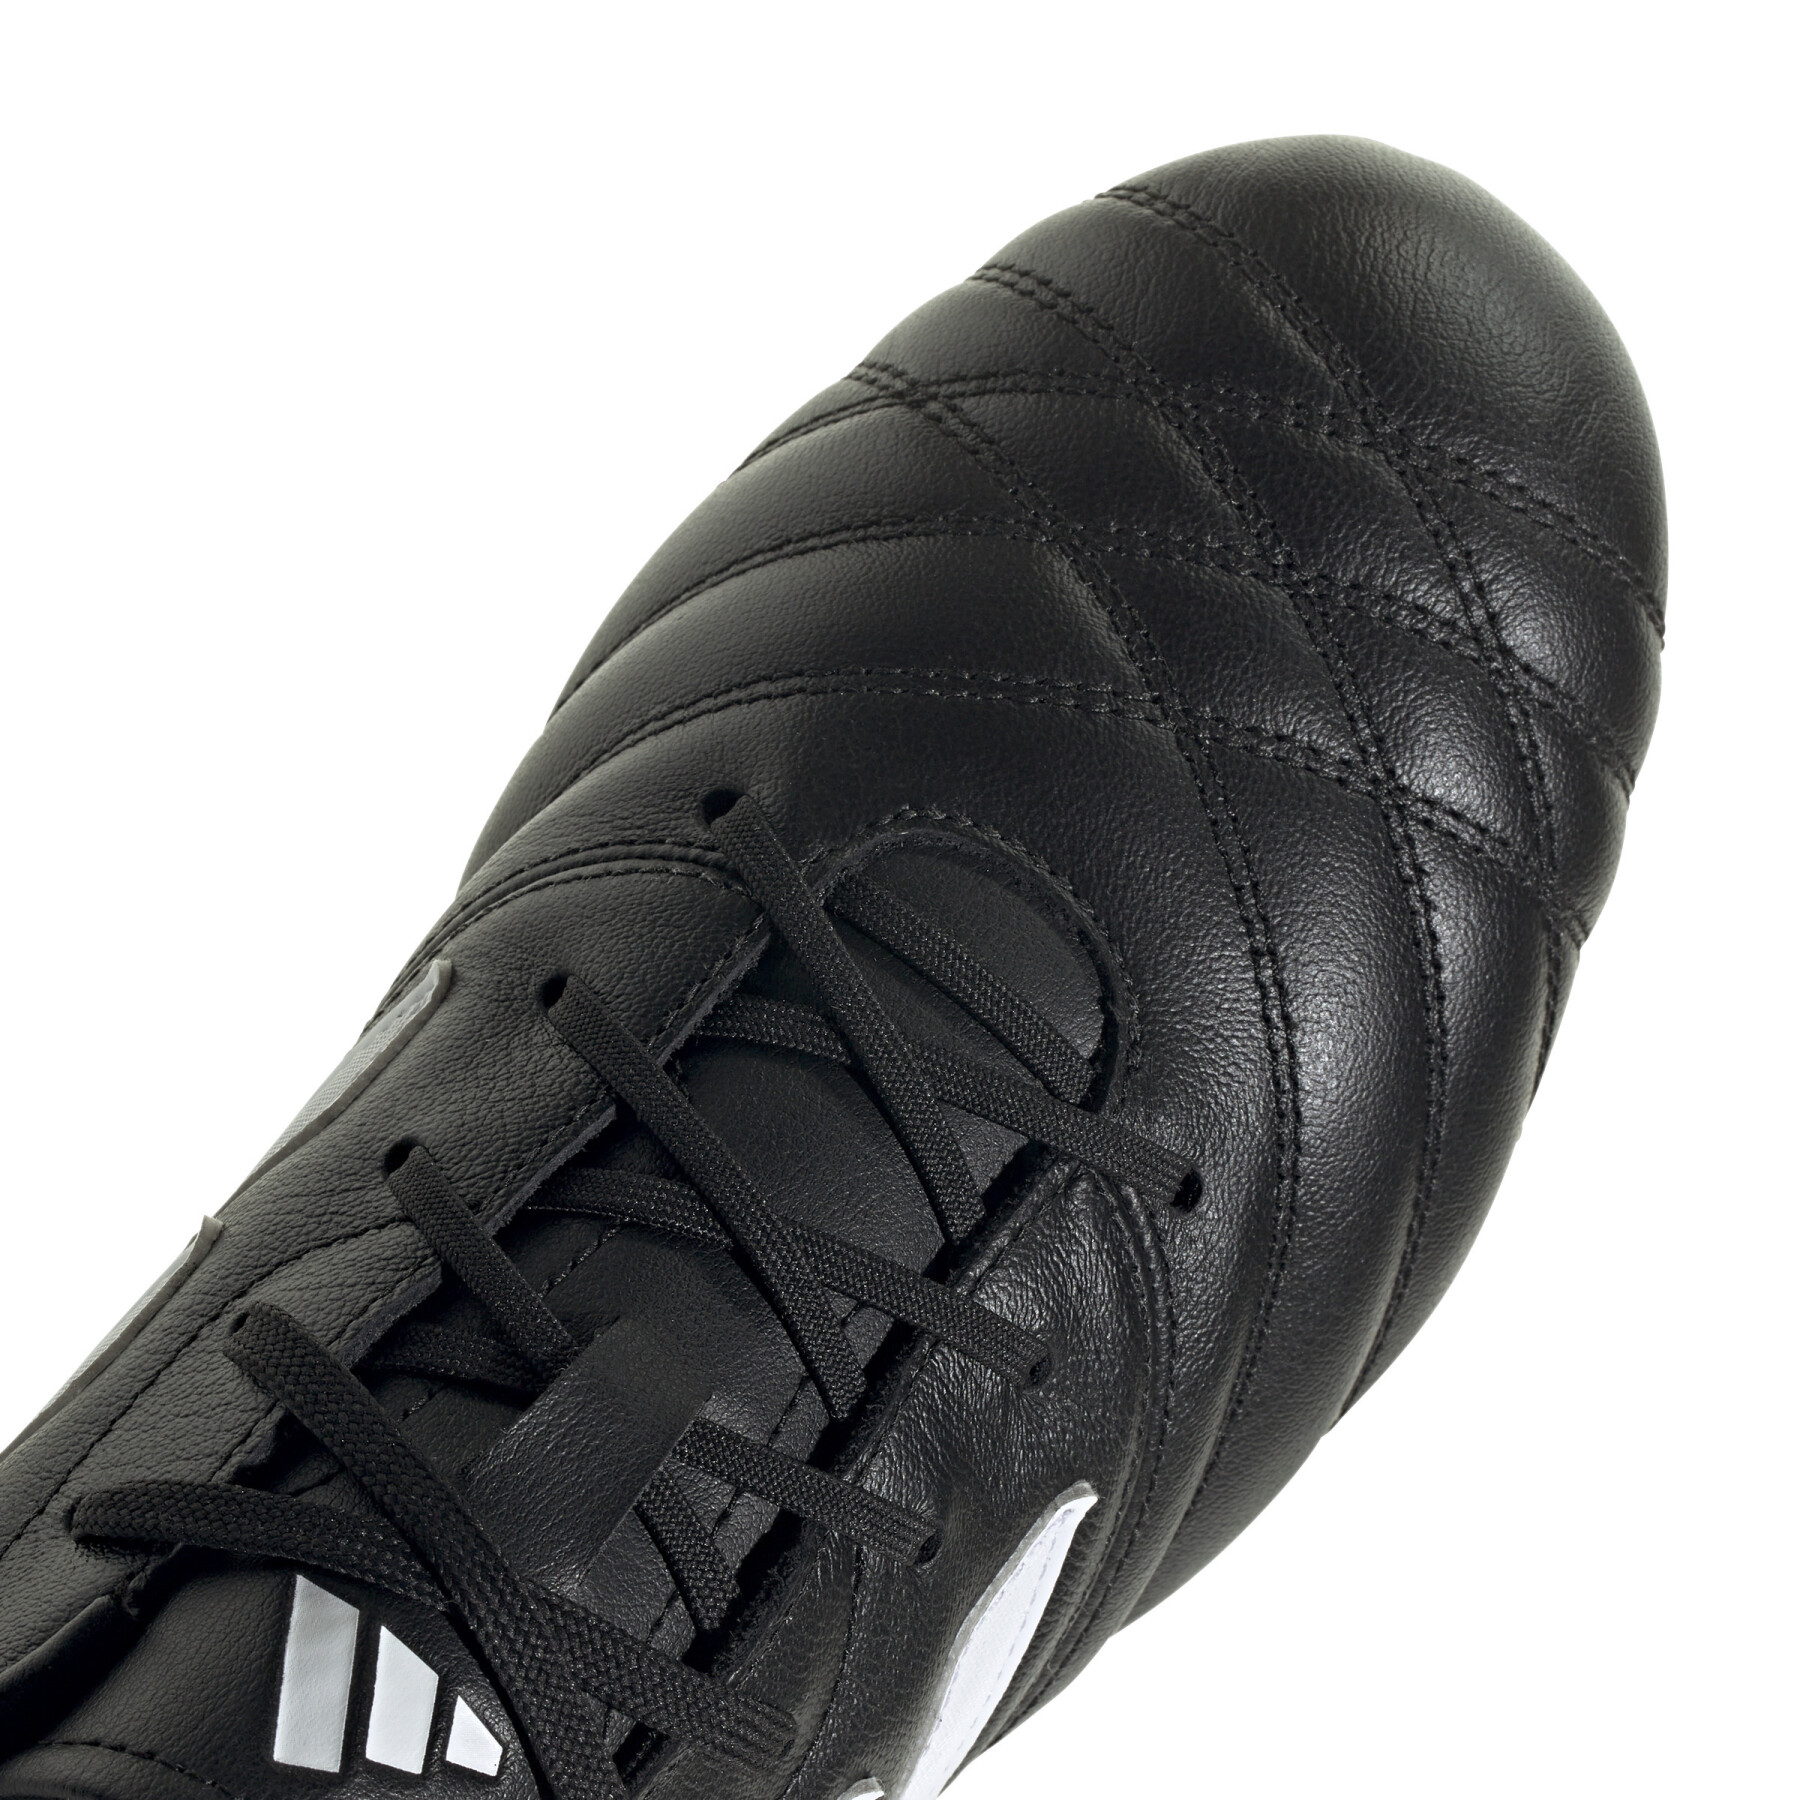 Chaussures de football adidas Copa Gloro ST SG